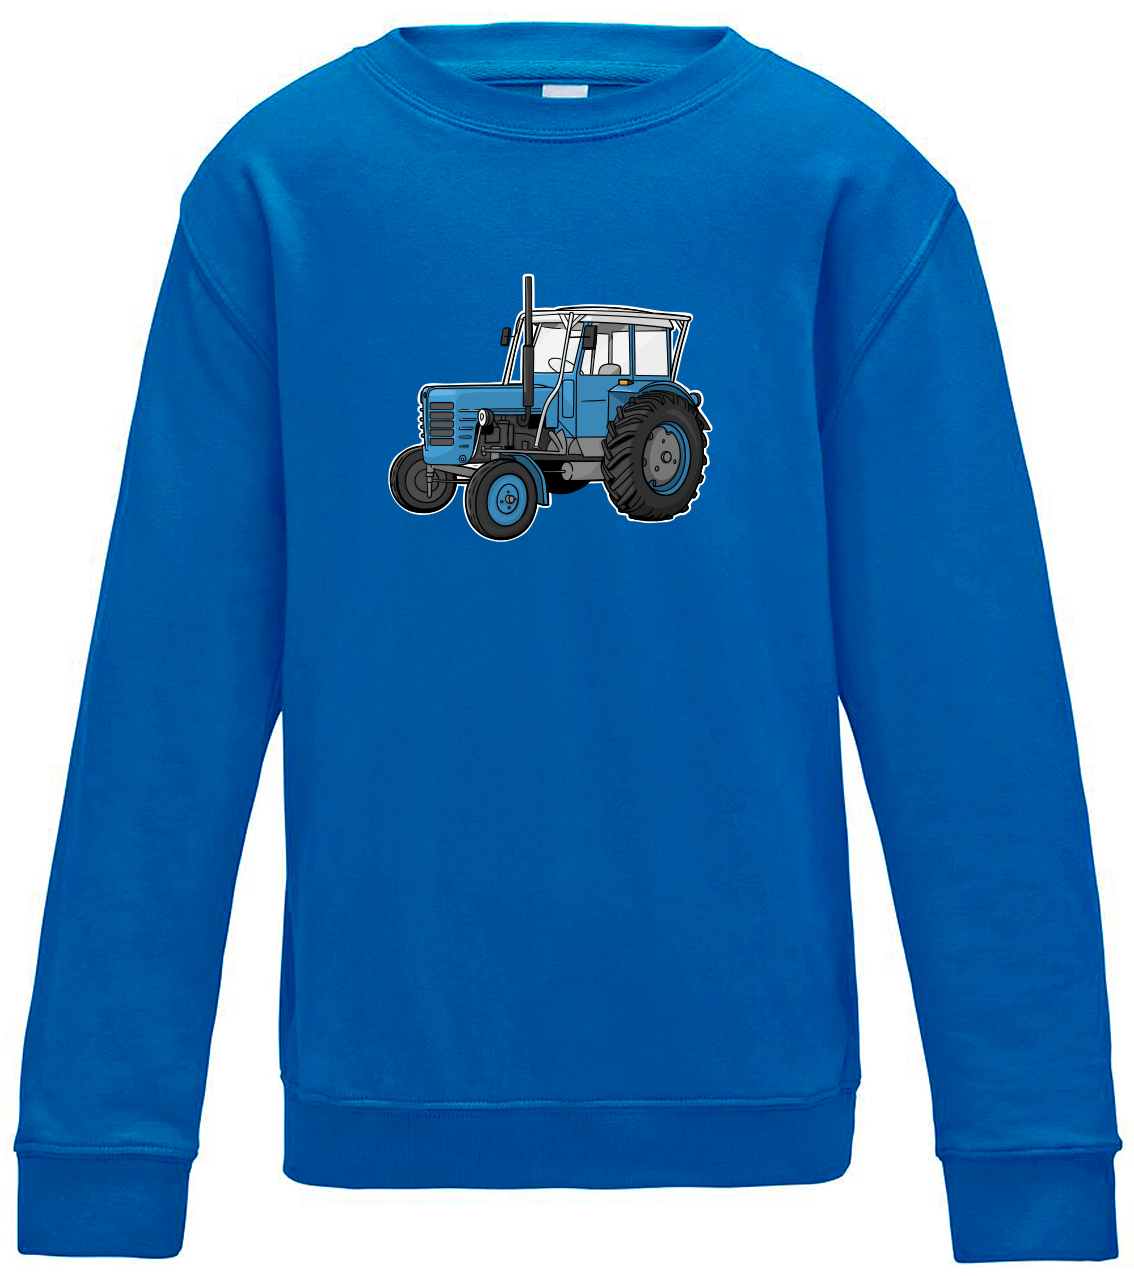 Dětská mikina s traktorem - Starý traktor Velikost: 5/6 (110/116), Barva: Modrá